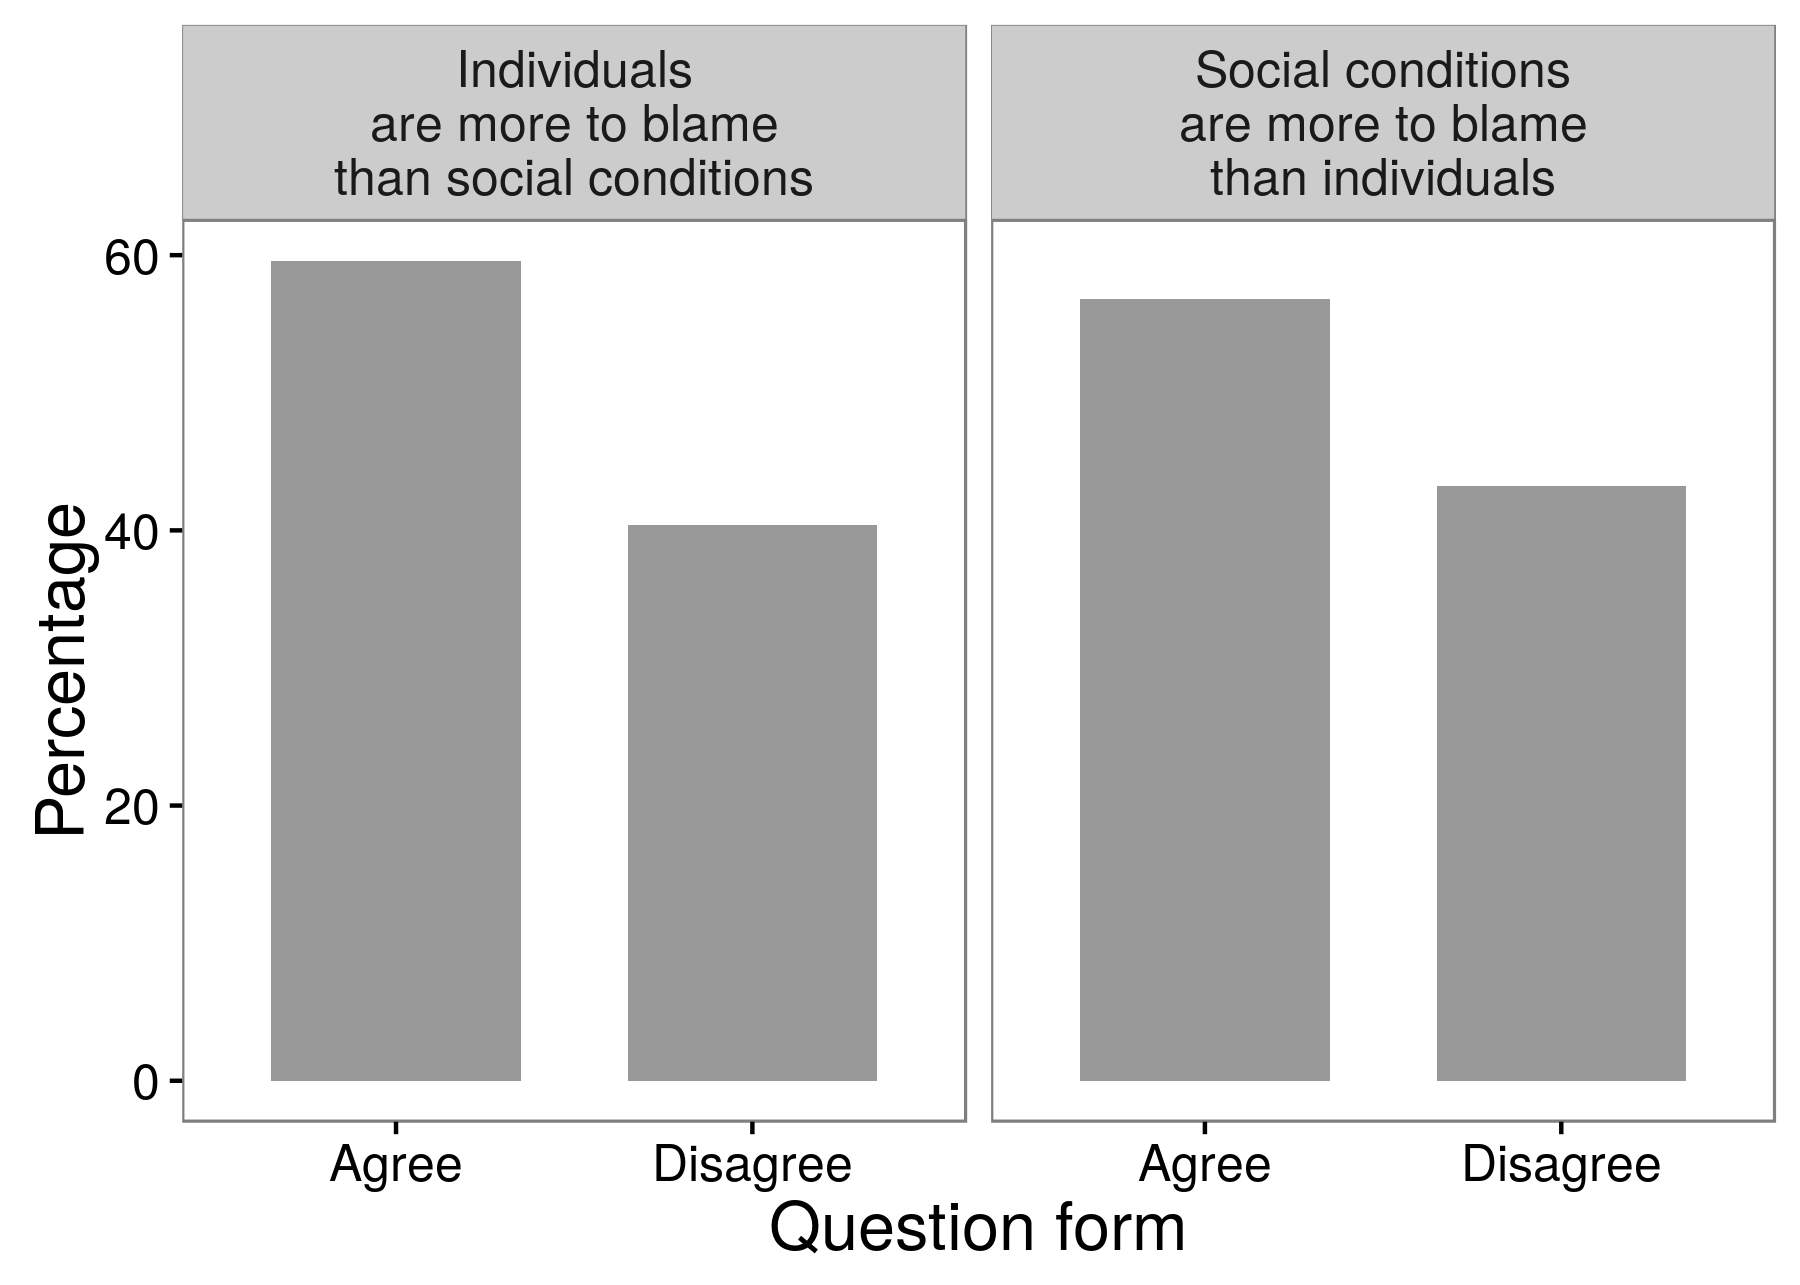 चित्रा 3.3: एक सर्वेक्षण प्रयोग बाट नतीजा देखाउने भनेर शोधकर्ताहरूले फरक जवाफ पाउन सक्दछन् र त्यसको आधारमा उनीहरूले यो प्रश्न सोध्थे। उत्तरदायीहरूको बहुमतले मानिसहरुलाई अपराध र अधर्मको लागि सामाजिक अवस्था भन्दा अधिक दोषी ठहरायो। र बहुमतका उत्तरदायीहरूले विपरीतसँग सहमत भए: त्यो सामाजिक परिस्थिति व्यक्तिहरू भन्दा बढी जिम्मेवार छन्। Schuman र प्रेसर (1 99 6) बाट समायोजित, तालिका 8.1।